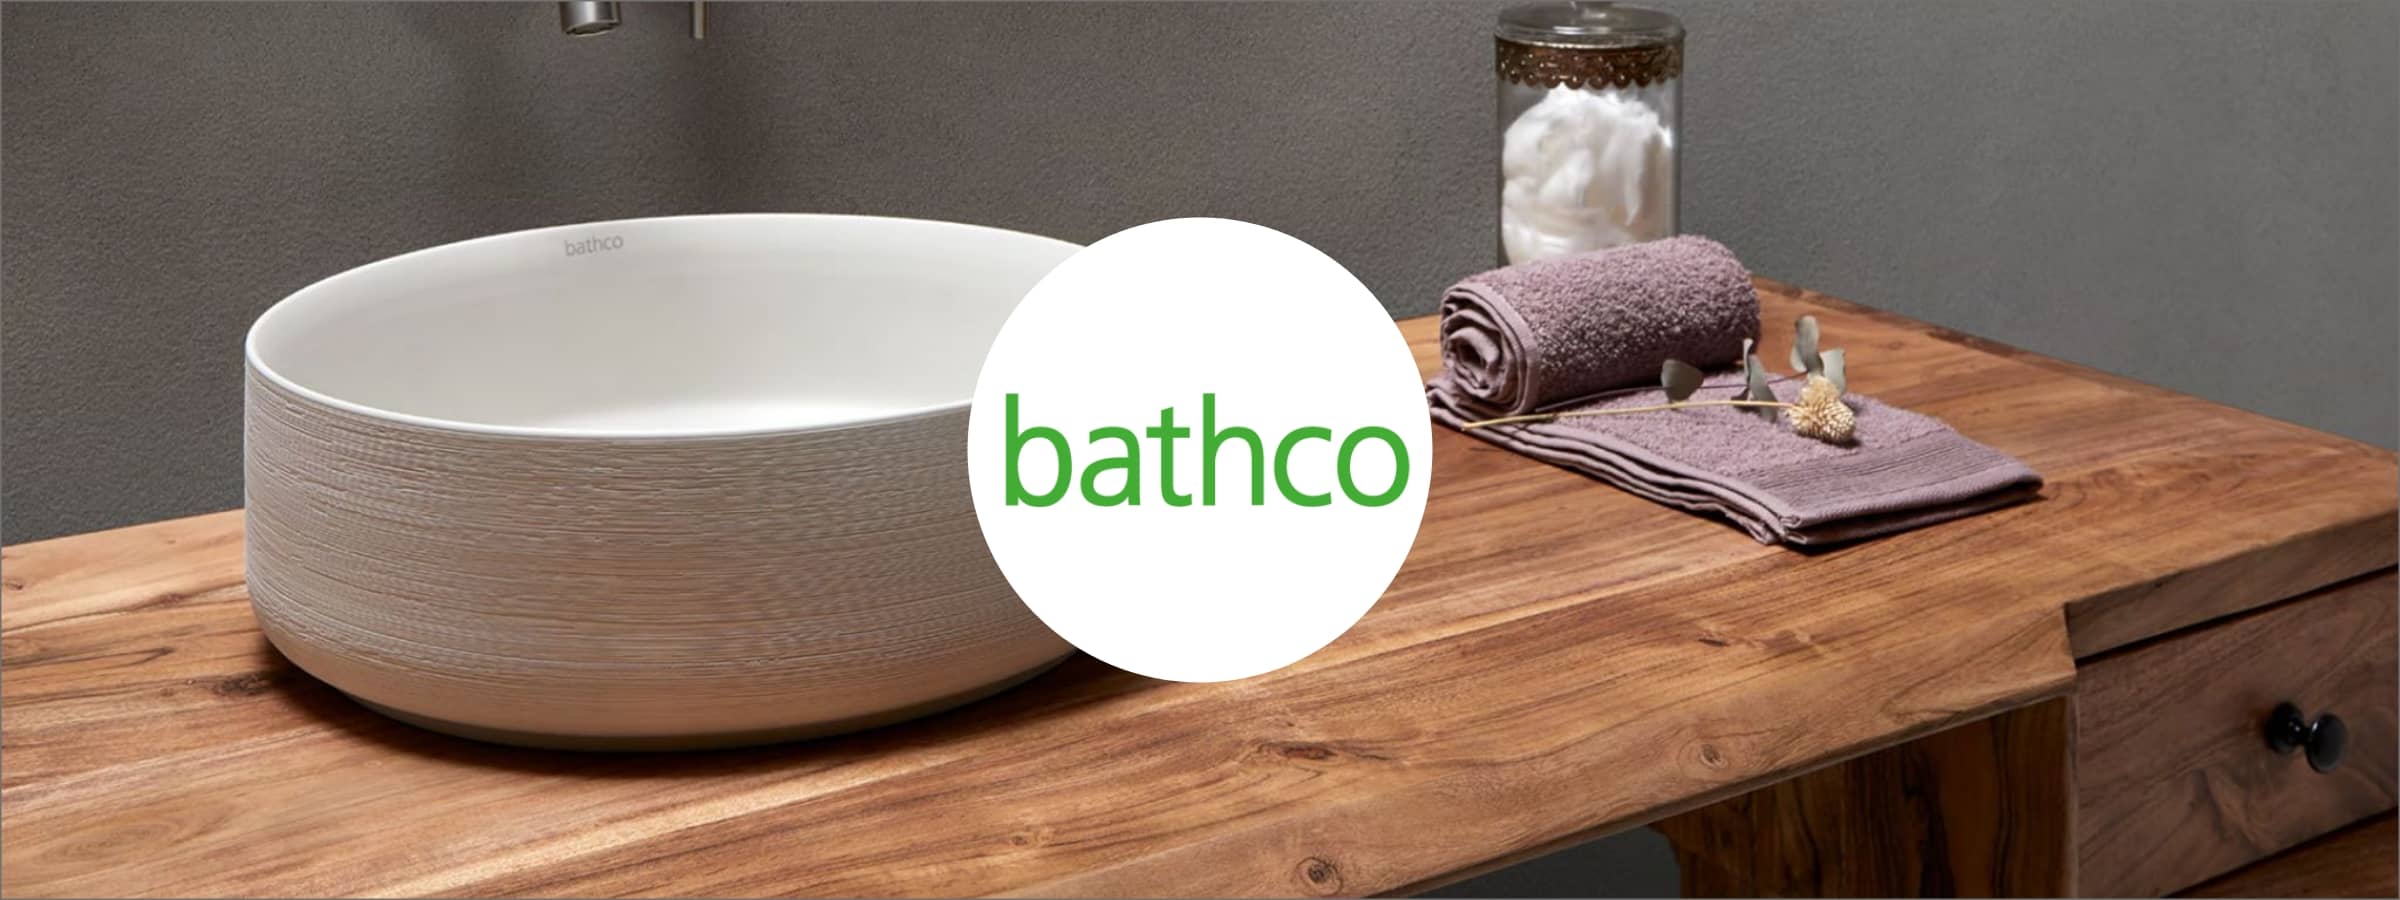 Colecciones y productos de la marca - Bathco